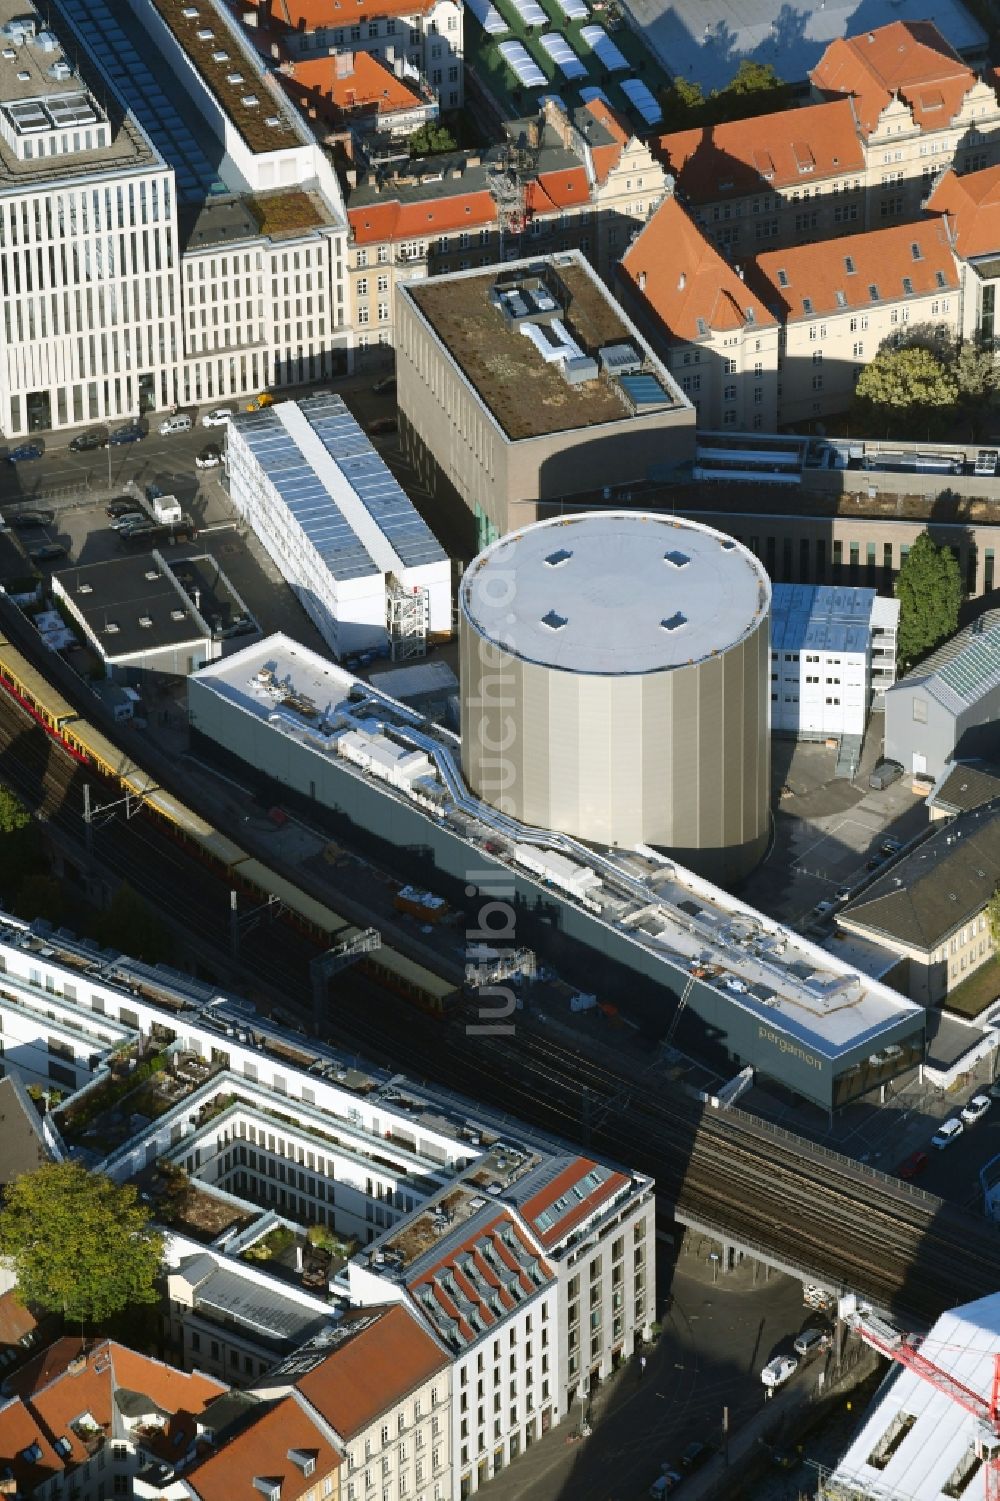 Berlin von oben - Gebäude- Ensemble PERGAMONMUSEUM. DAS PANORAMA TEMPORÄRER AUSSTELLUNGSBAU AM KUPFERGRABEN in Berlin, Deutschland